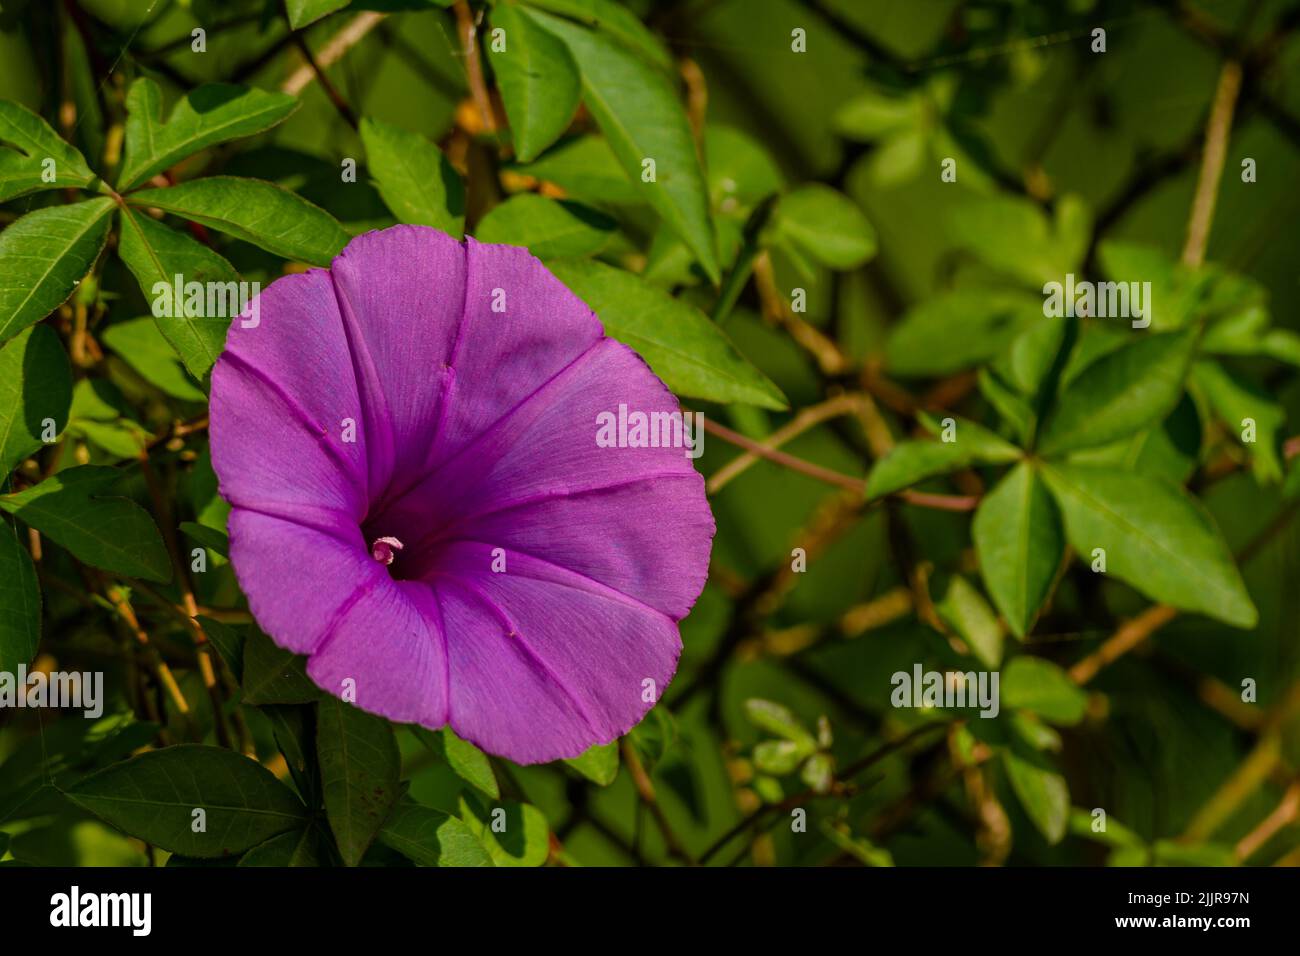 Ipomoea setifera Poir Blume, die in der Blüte ist, ist wie eine lila Trompete geformt, verschwommen grünen Laub Hintergrund Stockfoto